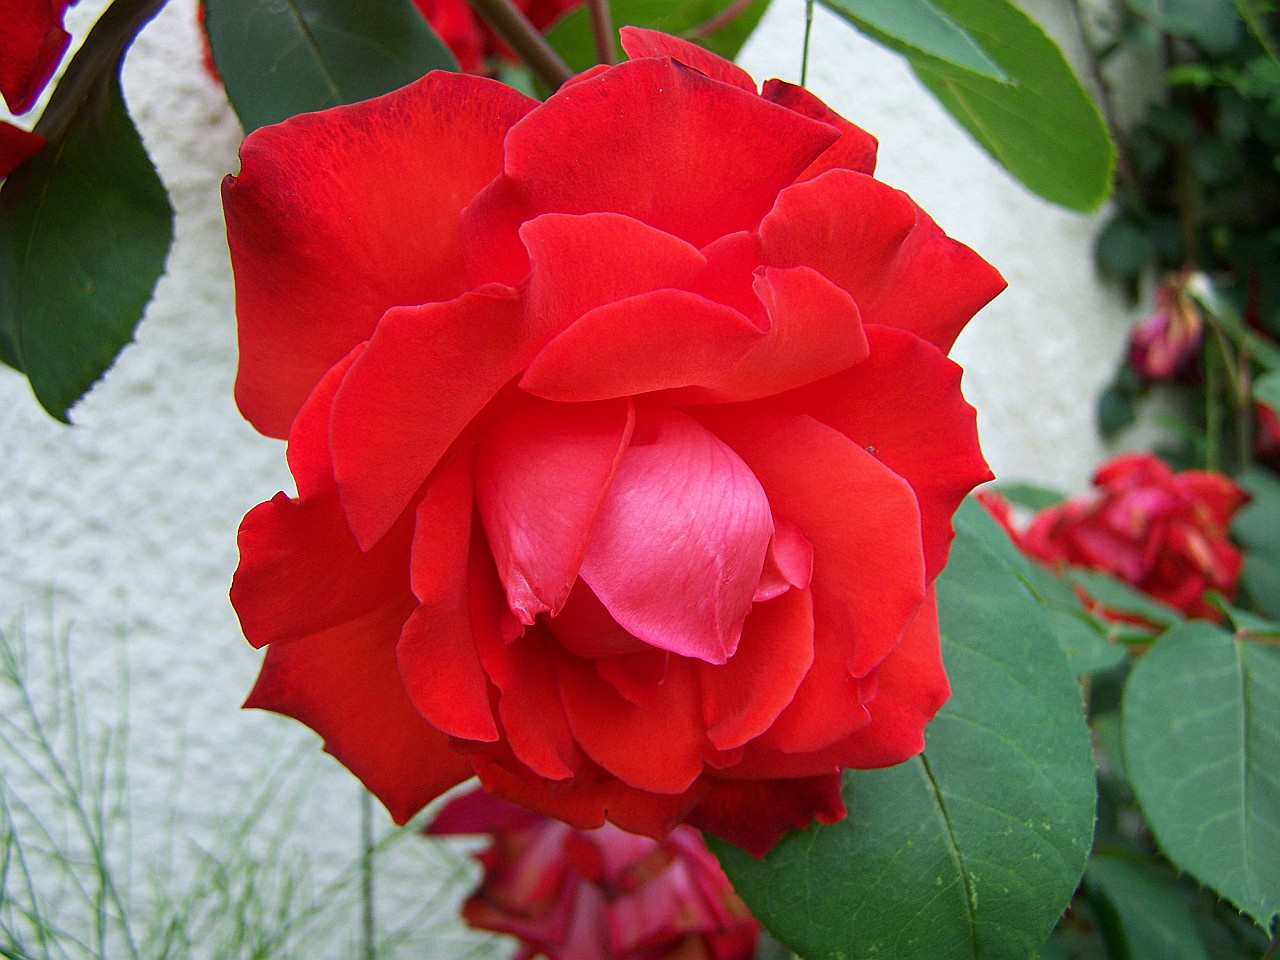 rózsa, nagy és különlegesen piros